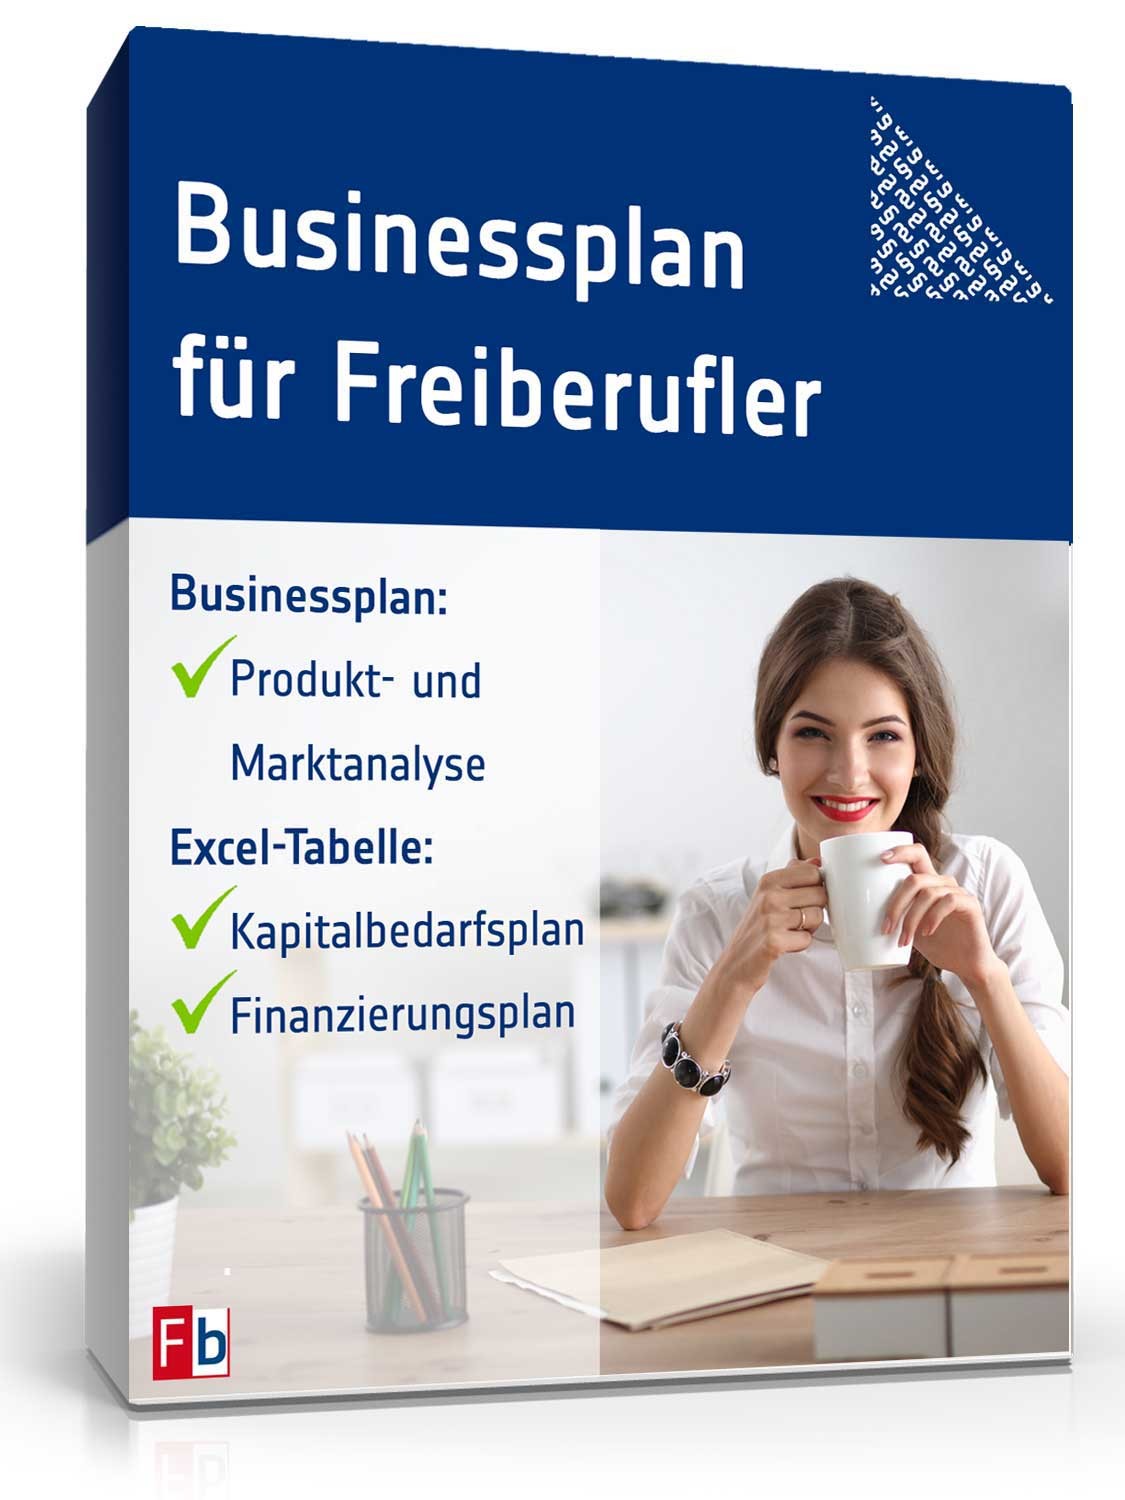 Hauptbild des Produkts: Businessplan für Freiberufler